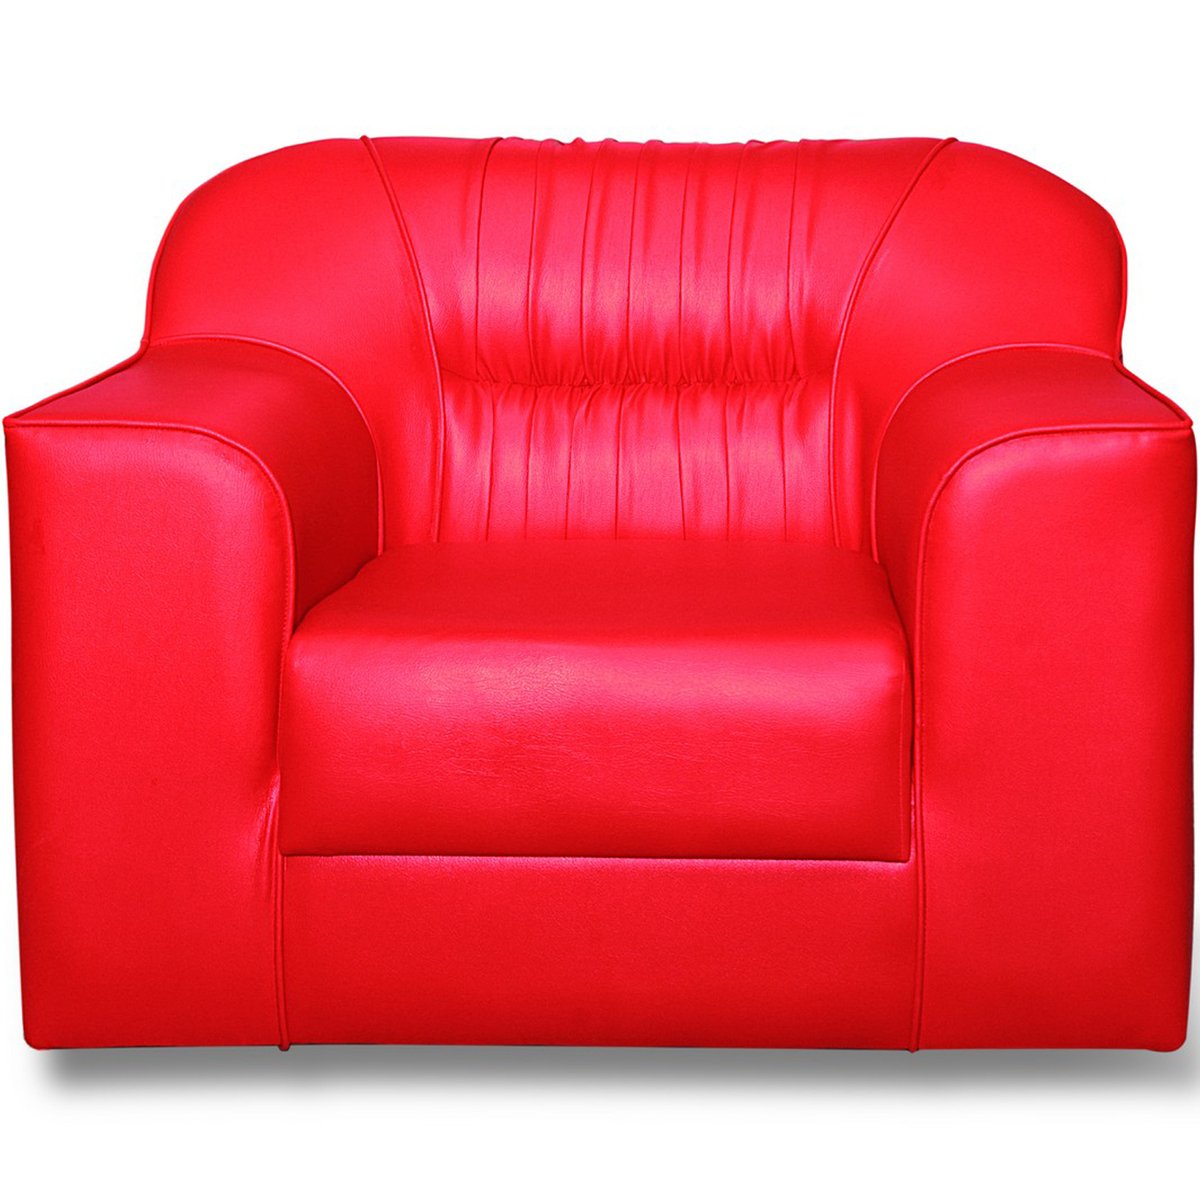 Design Plus Sofa Set 5 Seater (3+1+1) Red